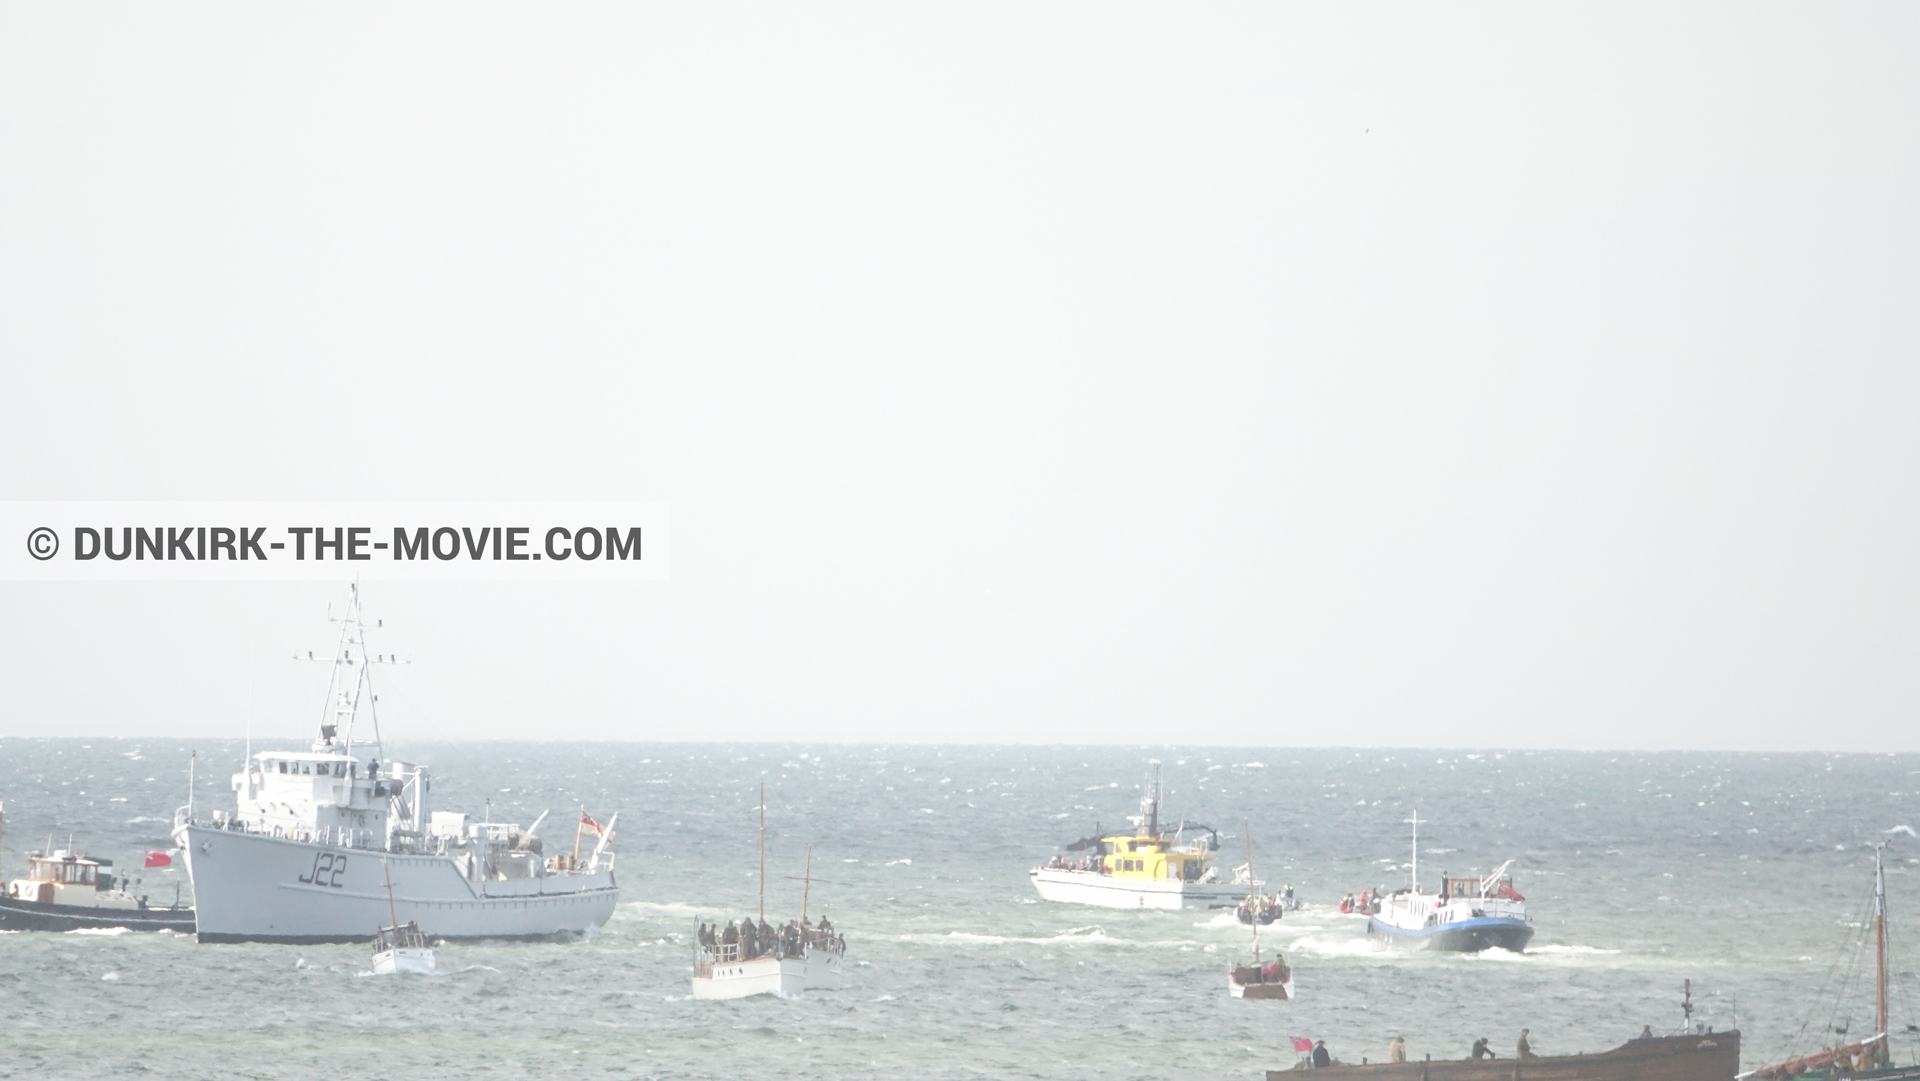 Fotos con barco, J22 -Hr.Ms. Naaldwijk, Ocean Wind 4,  durante el rodaje de la película Dunkerque de Nolan